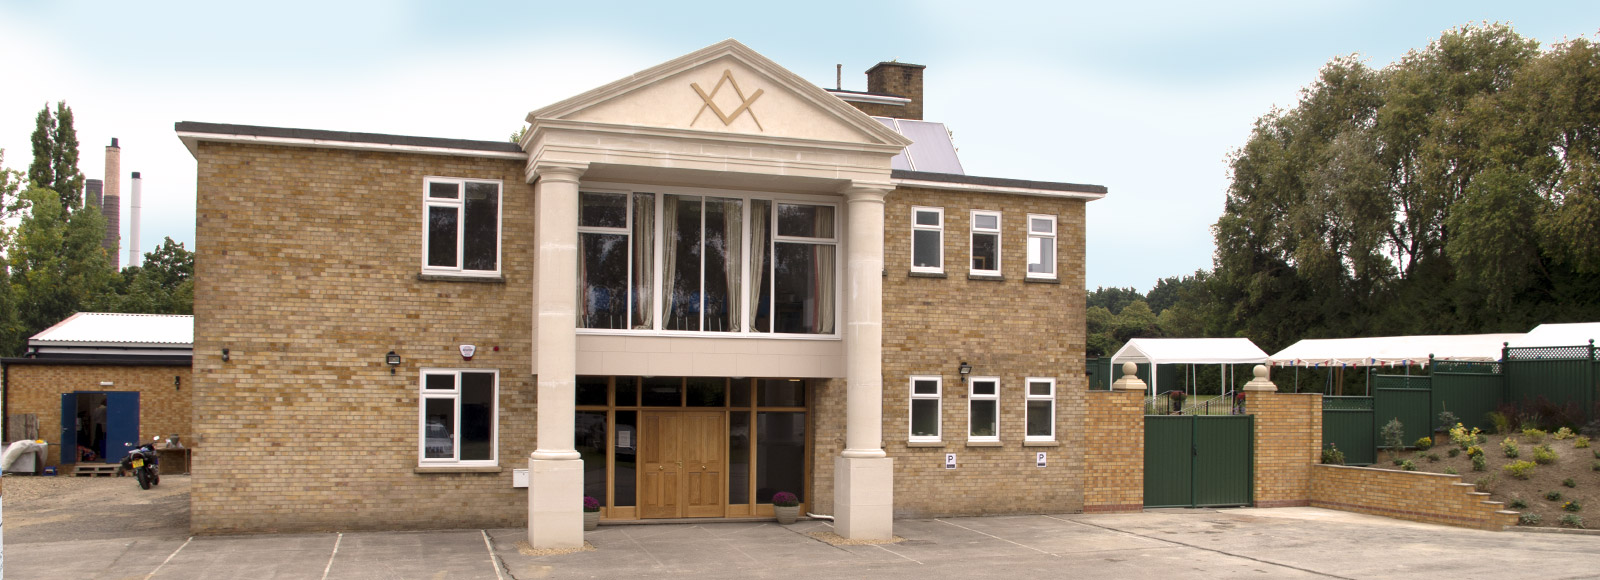 St Edmundsbury Masonic Centre